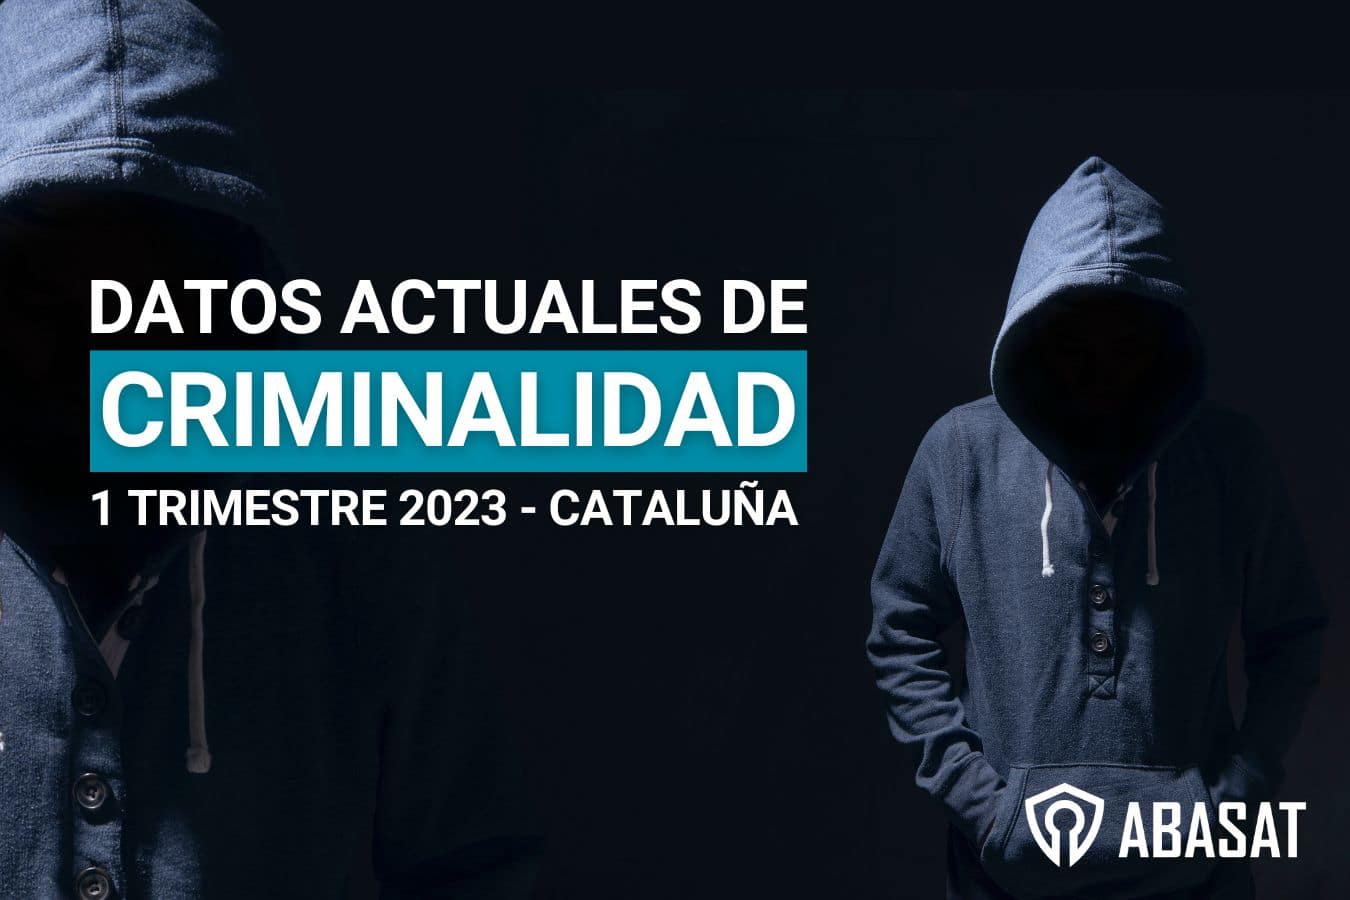 Datos de criminalidad en Cataluña 2023